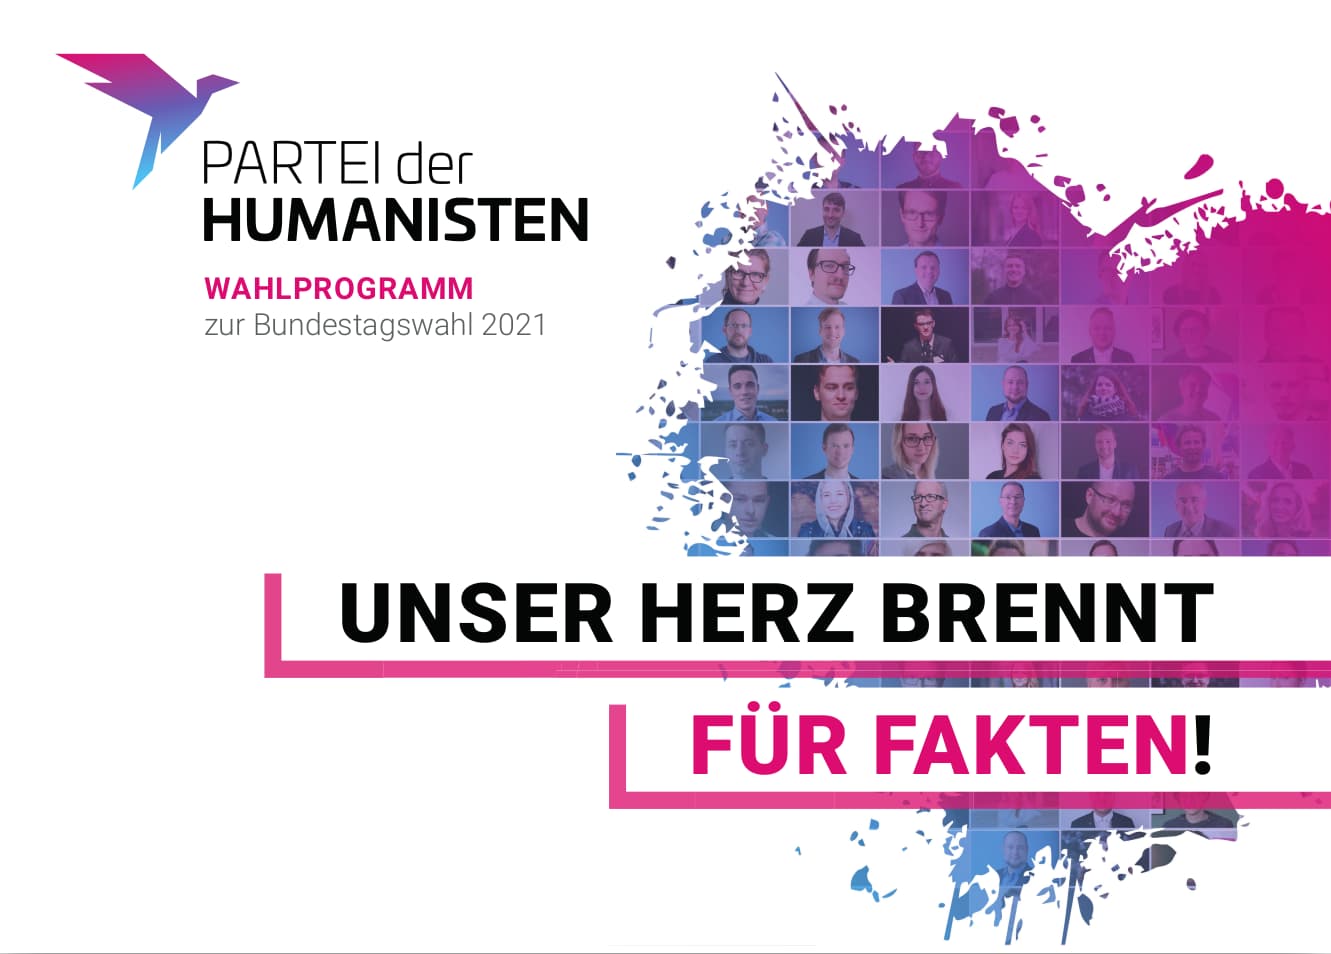 Die Humanisten - Wahlprogramm zur Bundestagswahl 2021